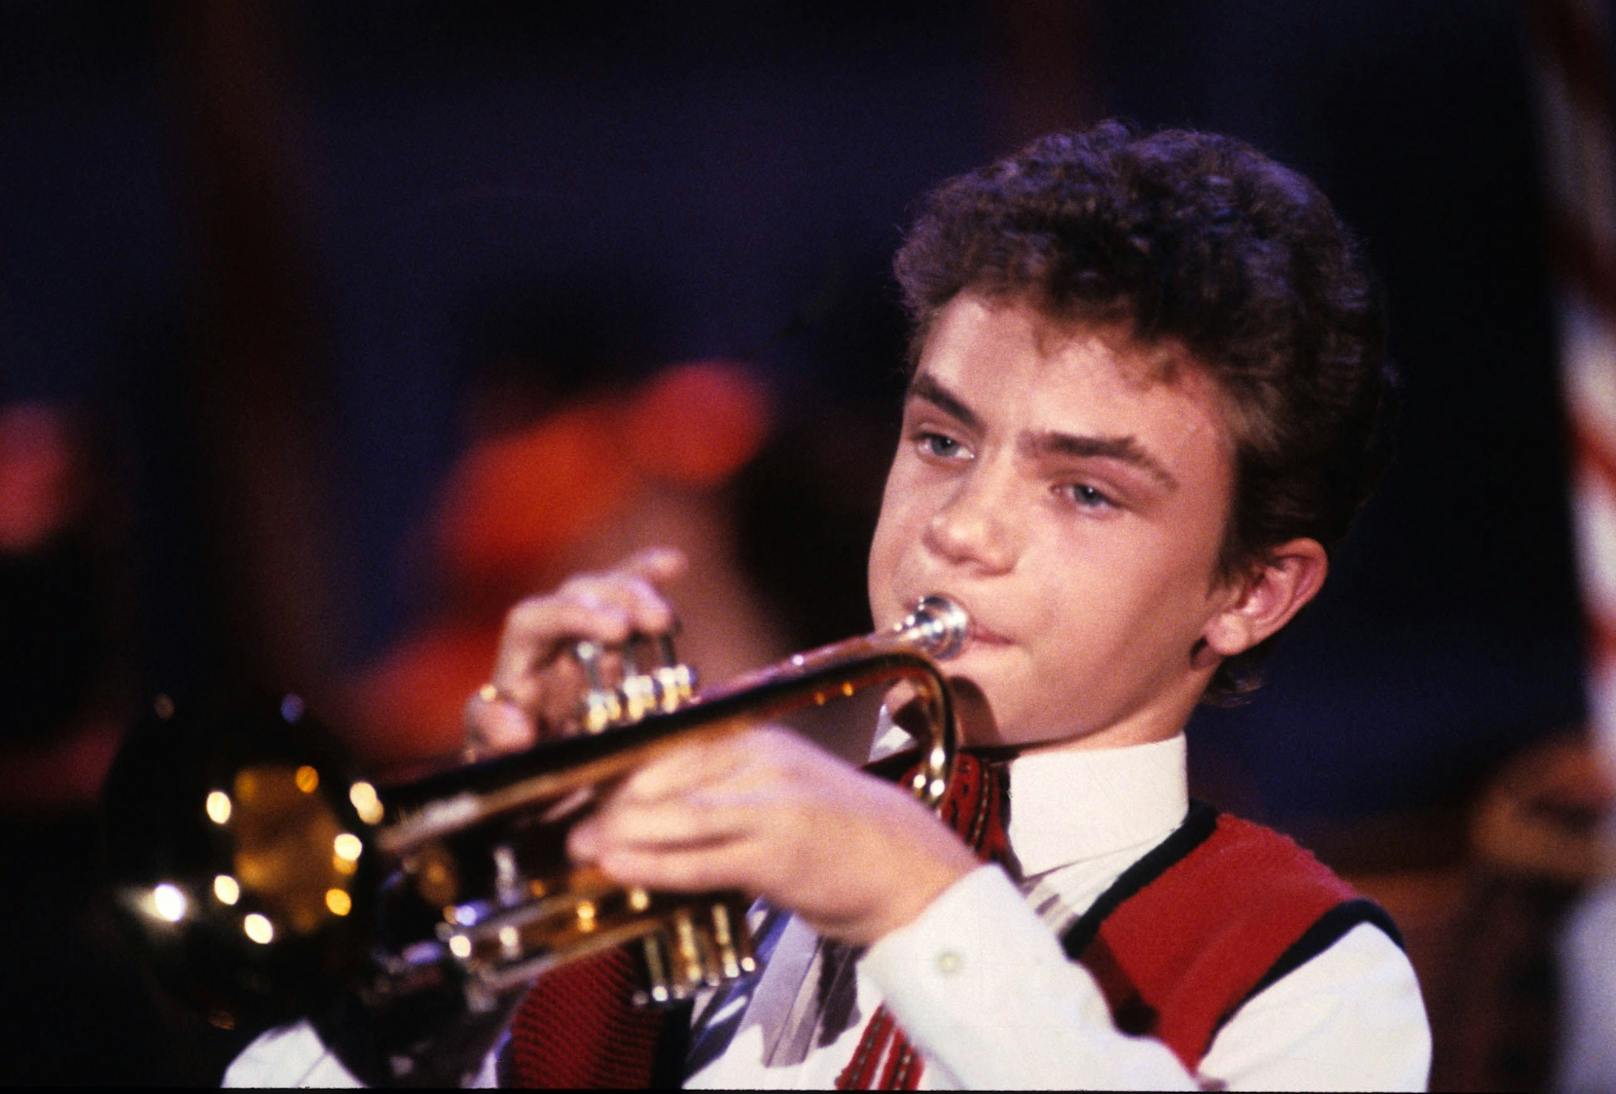 Bereits als 13-Jähriger wurde er auf einer Hochzeit entdeckt. 1989 gewann er mit der "Heimwehmelodie" den "Grand Prix der Volksmusik" für Österreich.